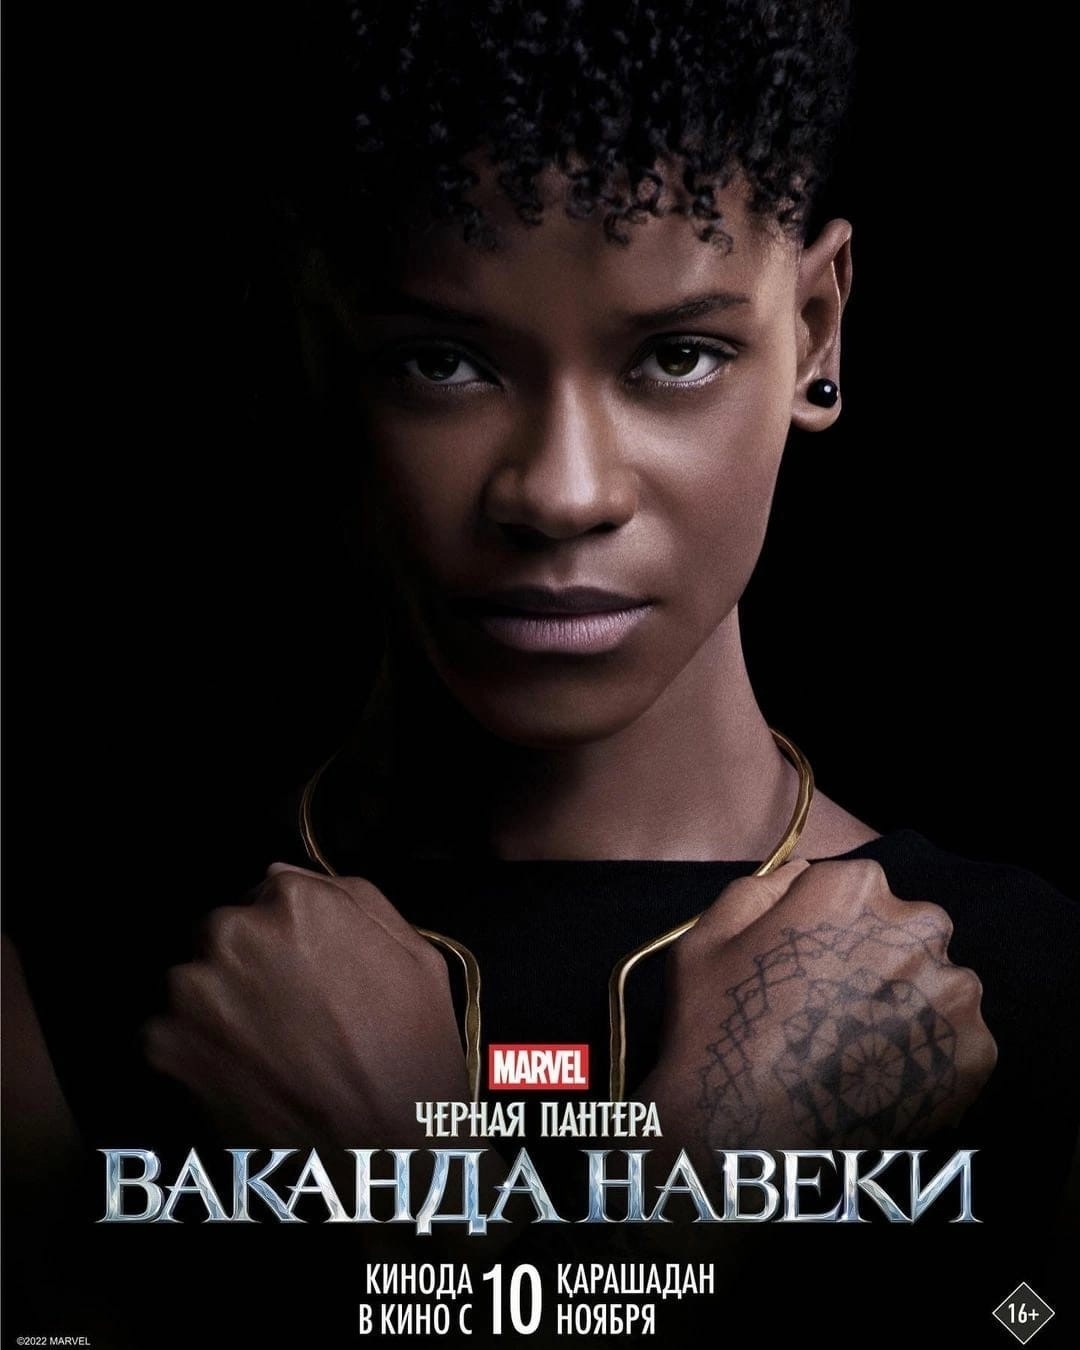 Вышли русские постеры фильма «Черная пантера 2: Ваканда навеки»